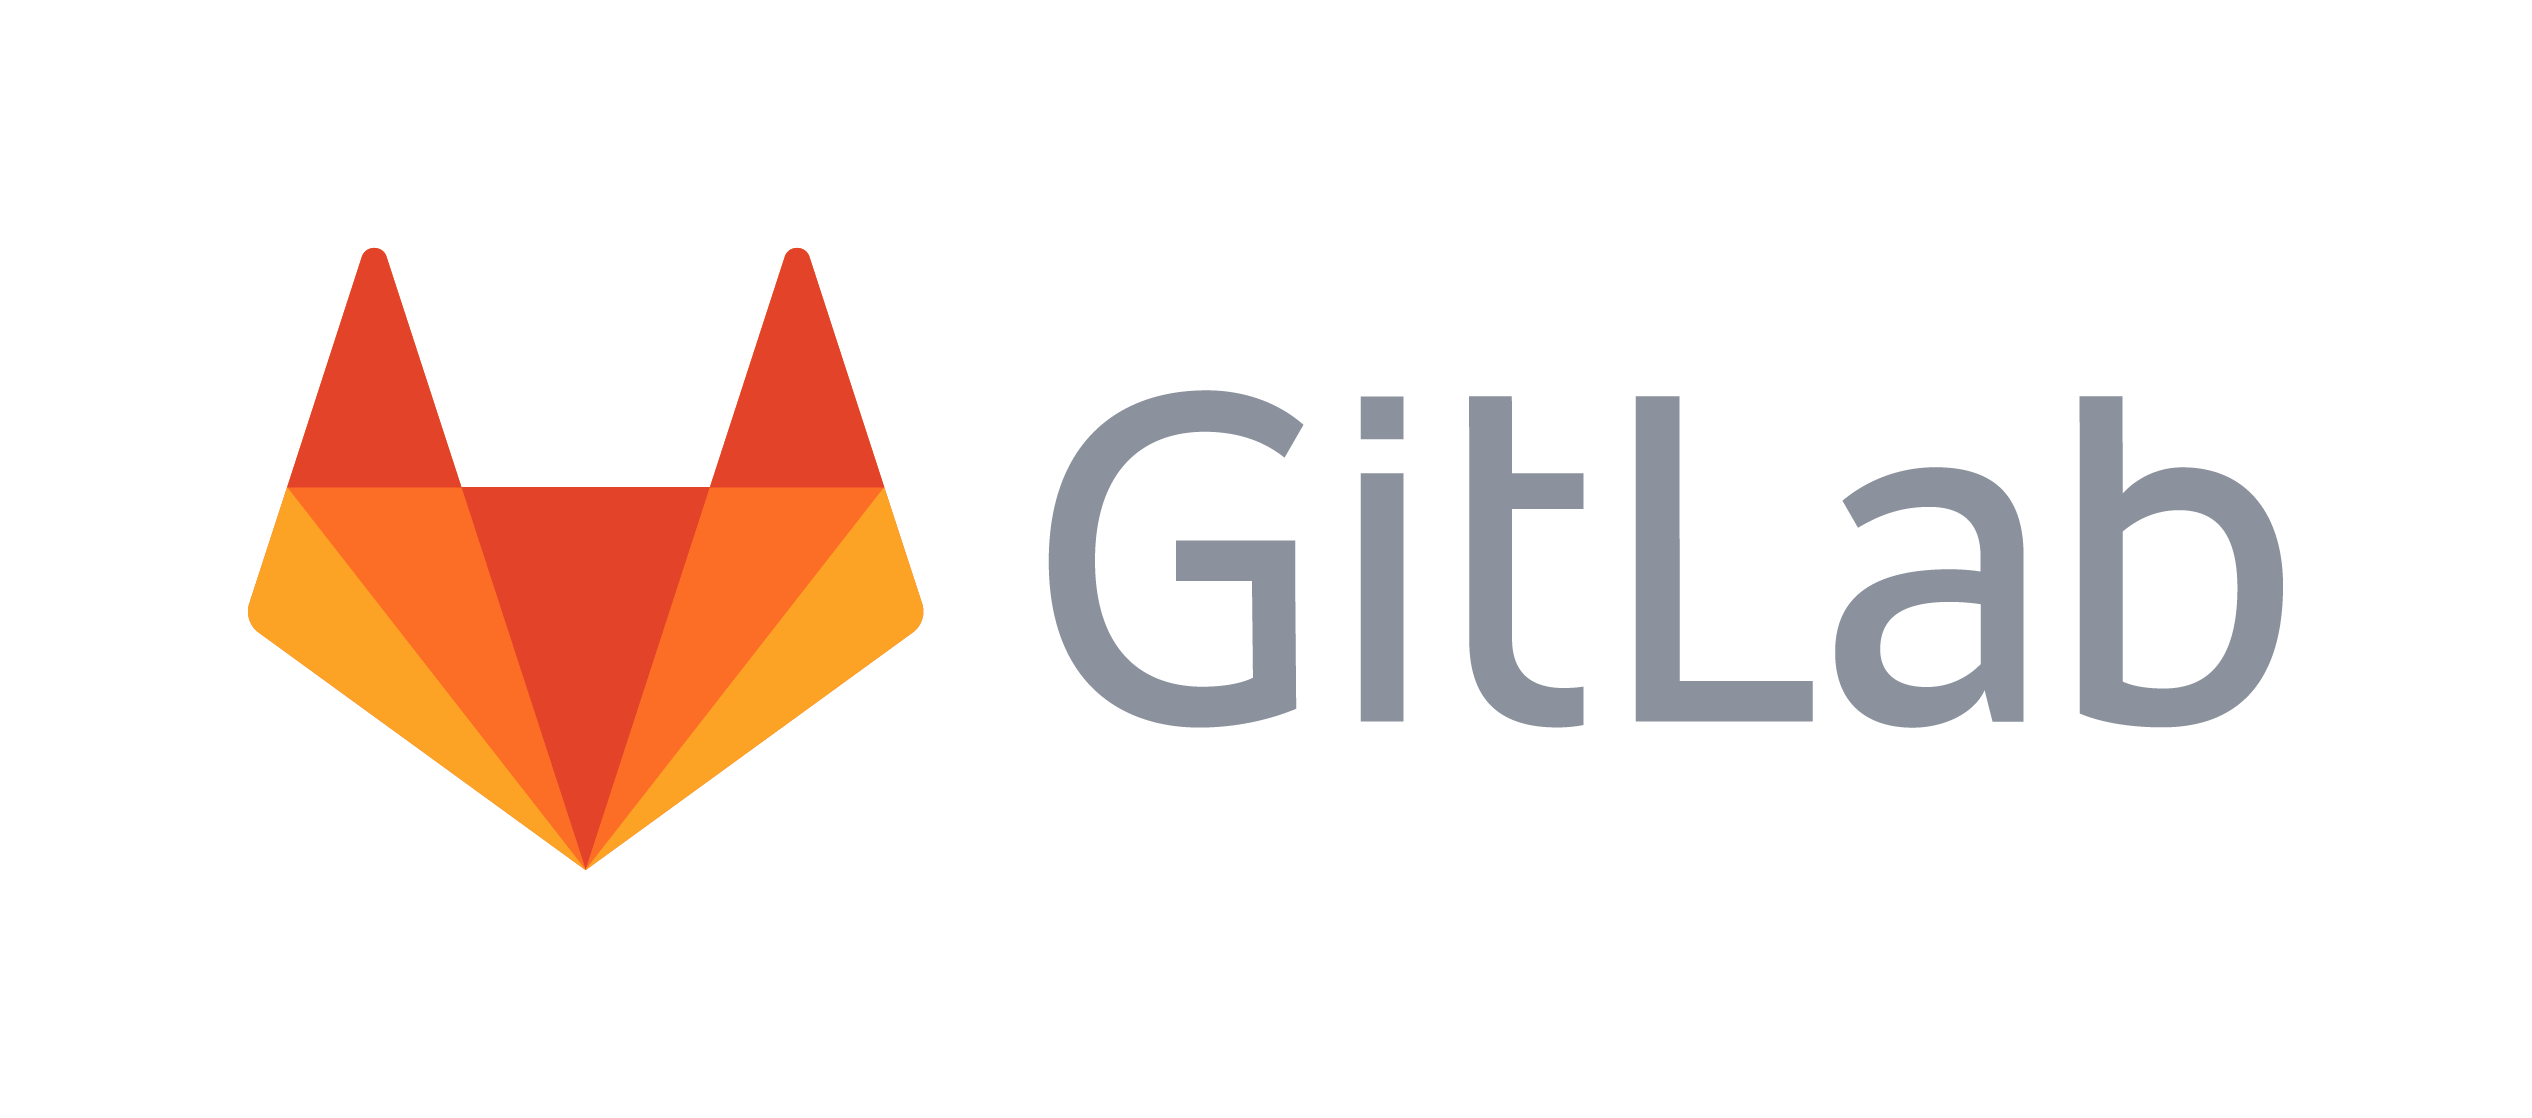 GitLab logo.